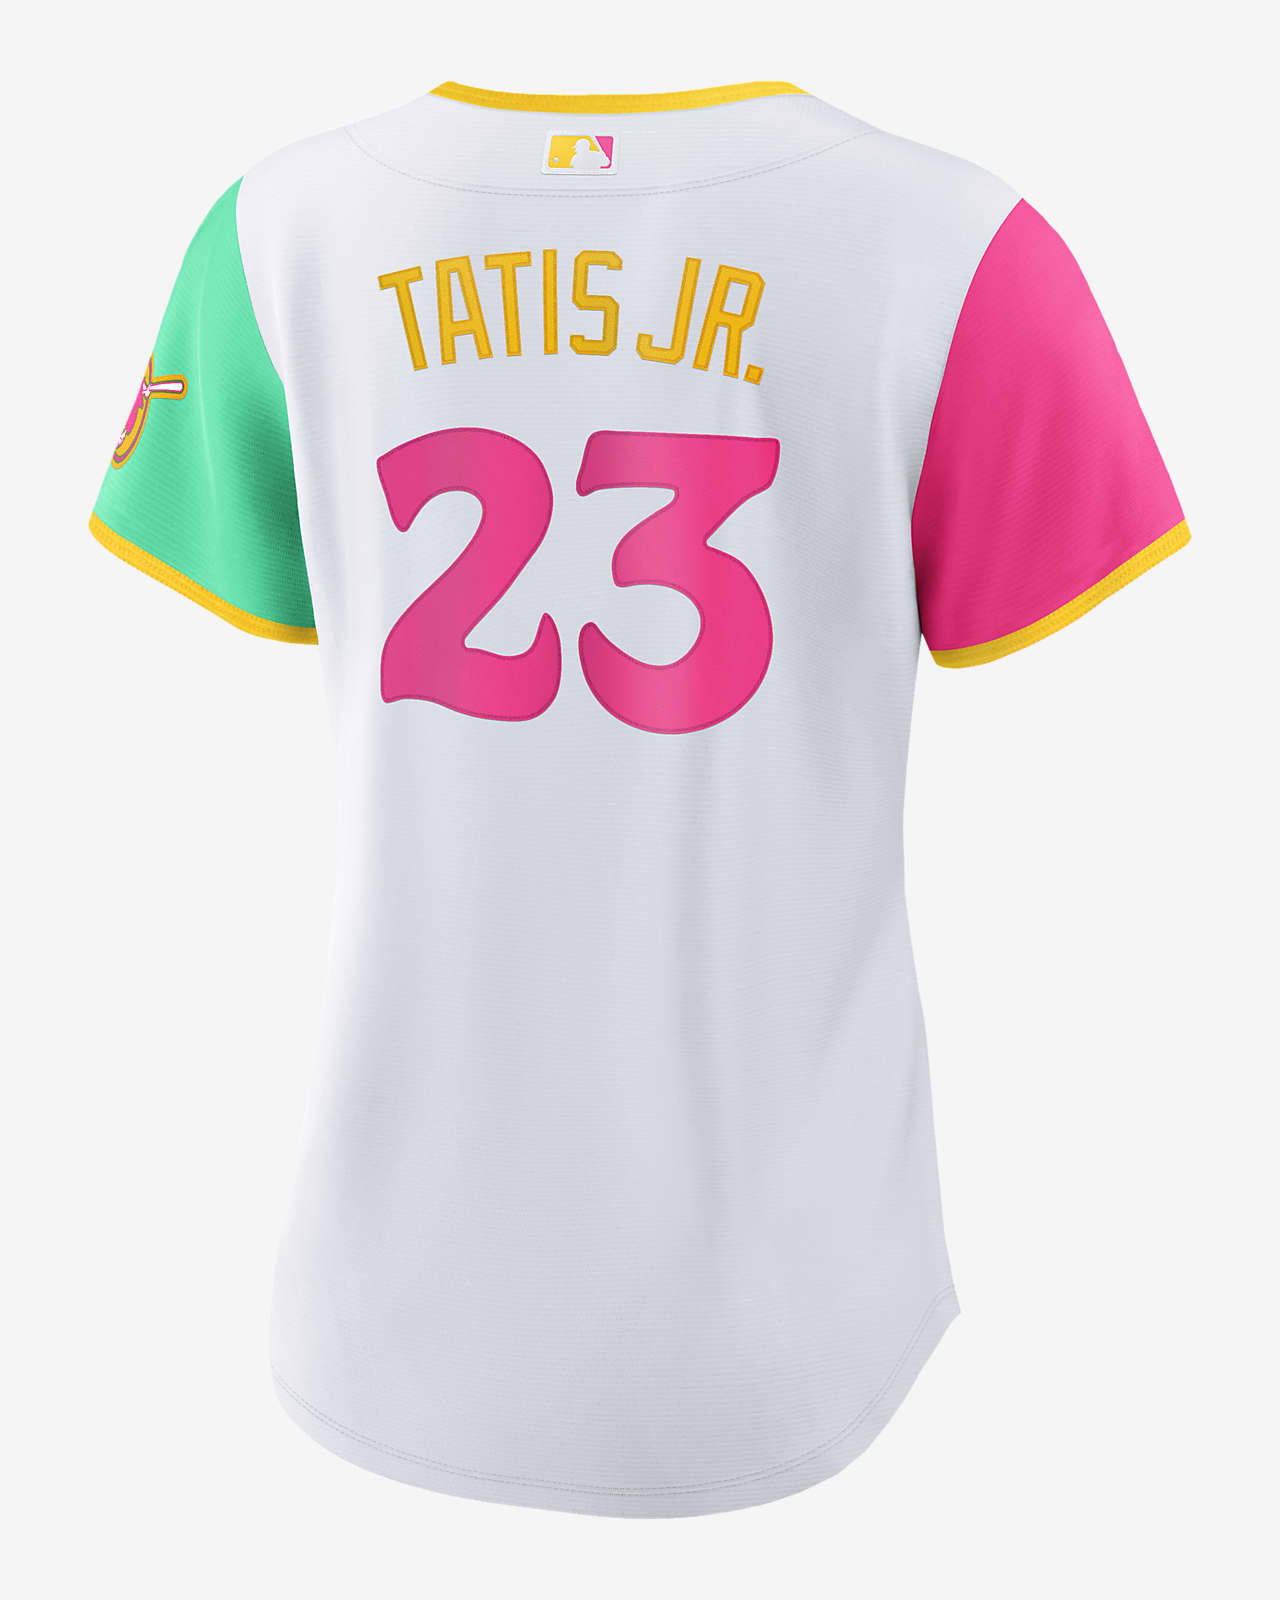 women's tatis jr jersey